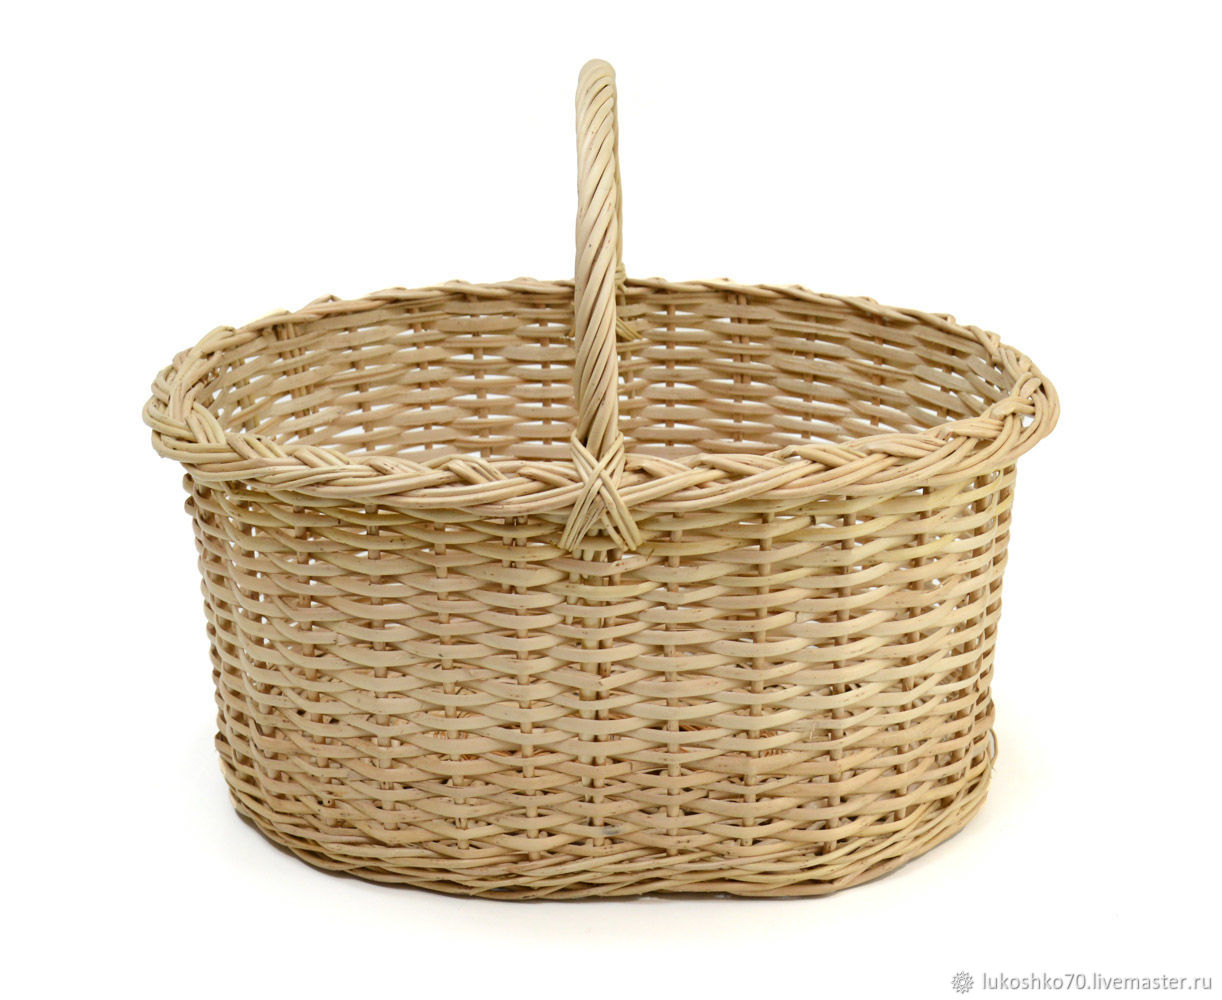 Large wicker picnic basket. basket of vines, Basket, Tomsk,  Фото №1